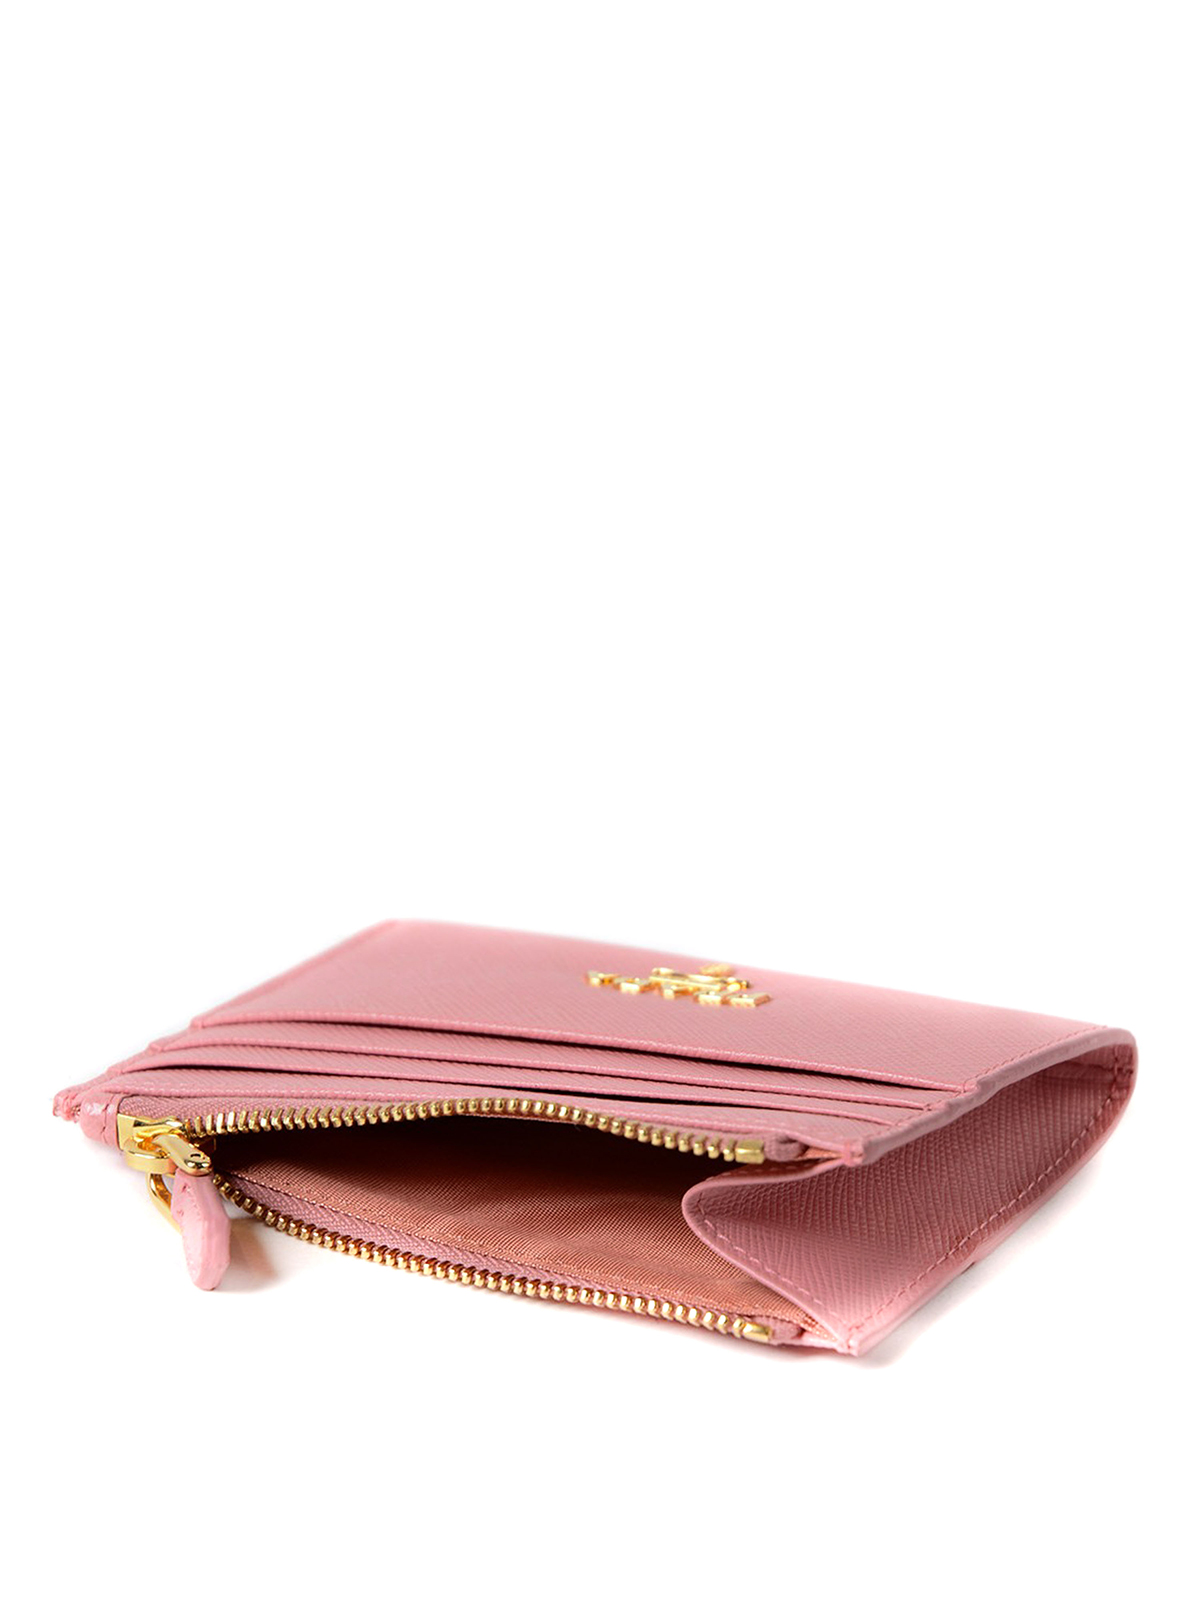 Prada Pink Saffiano Card Holder 